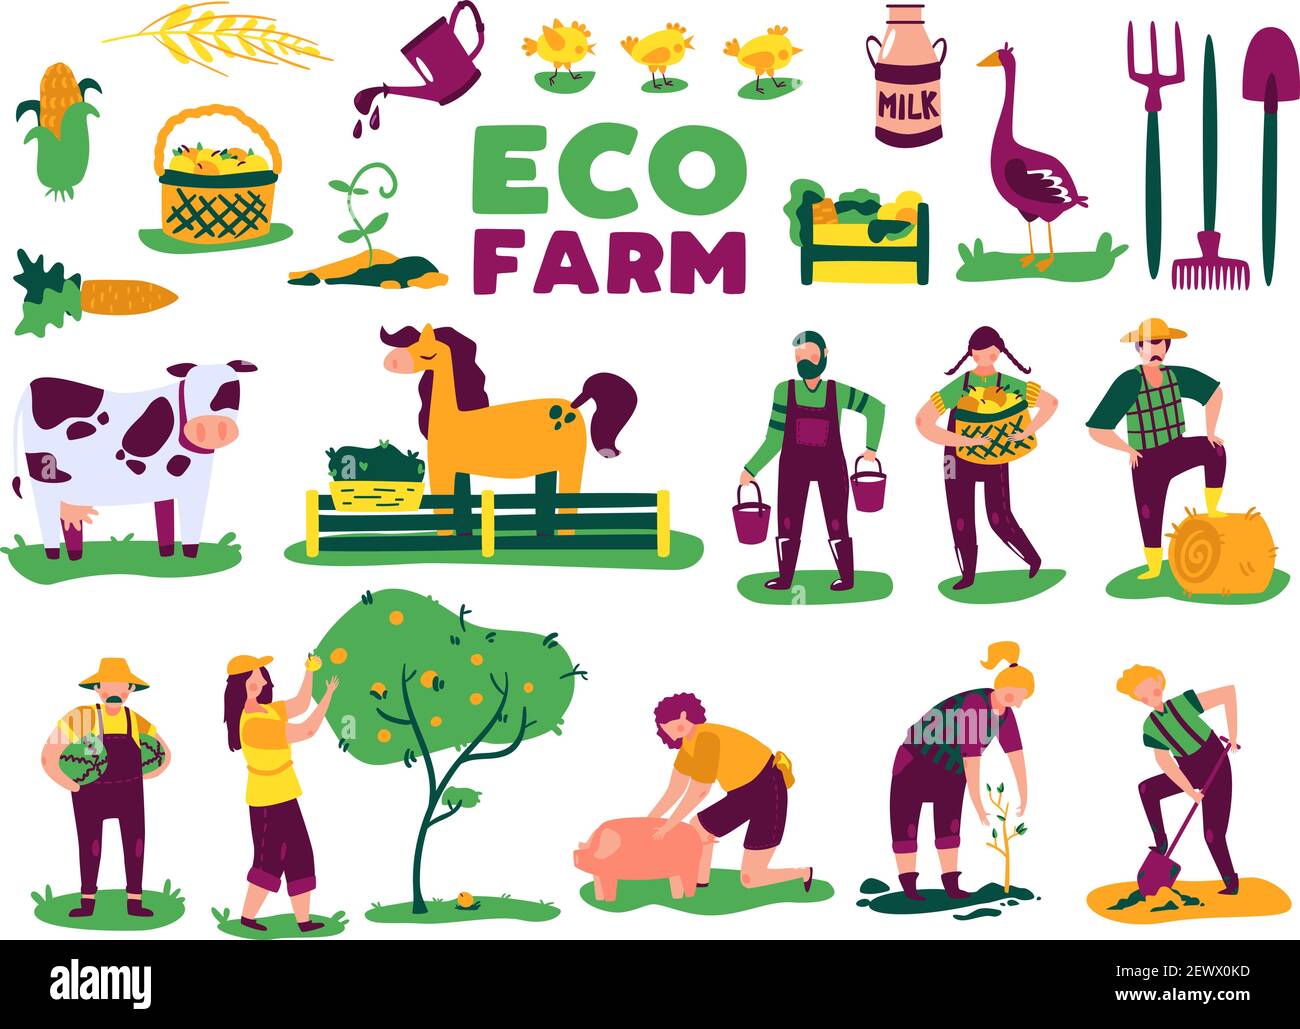 Eco Farming Ernte Set mit isolierten Bildern von Nutztieren Pflanzen und Doodle Zeichen von Menschen Vektor-Illustration Stock Vektor